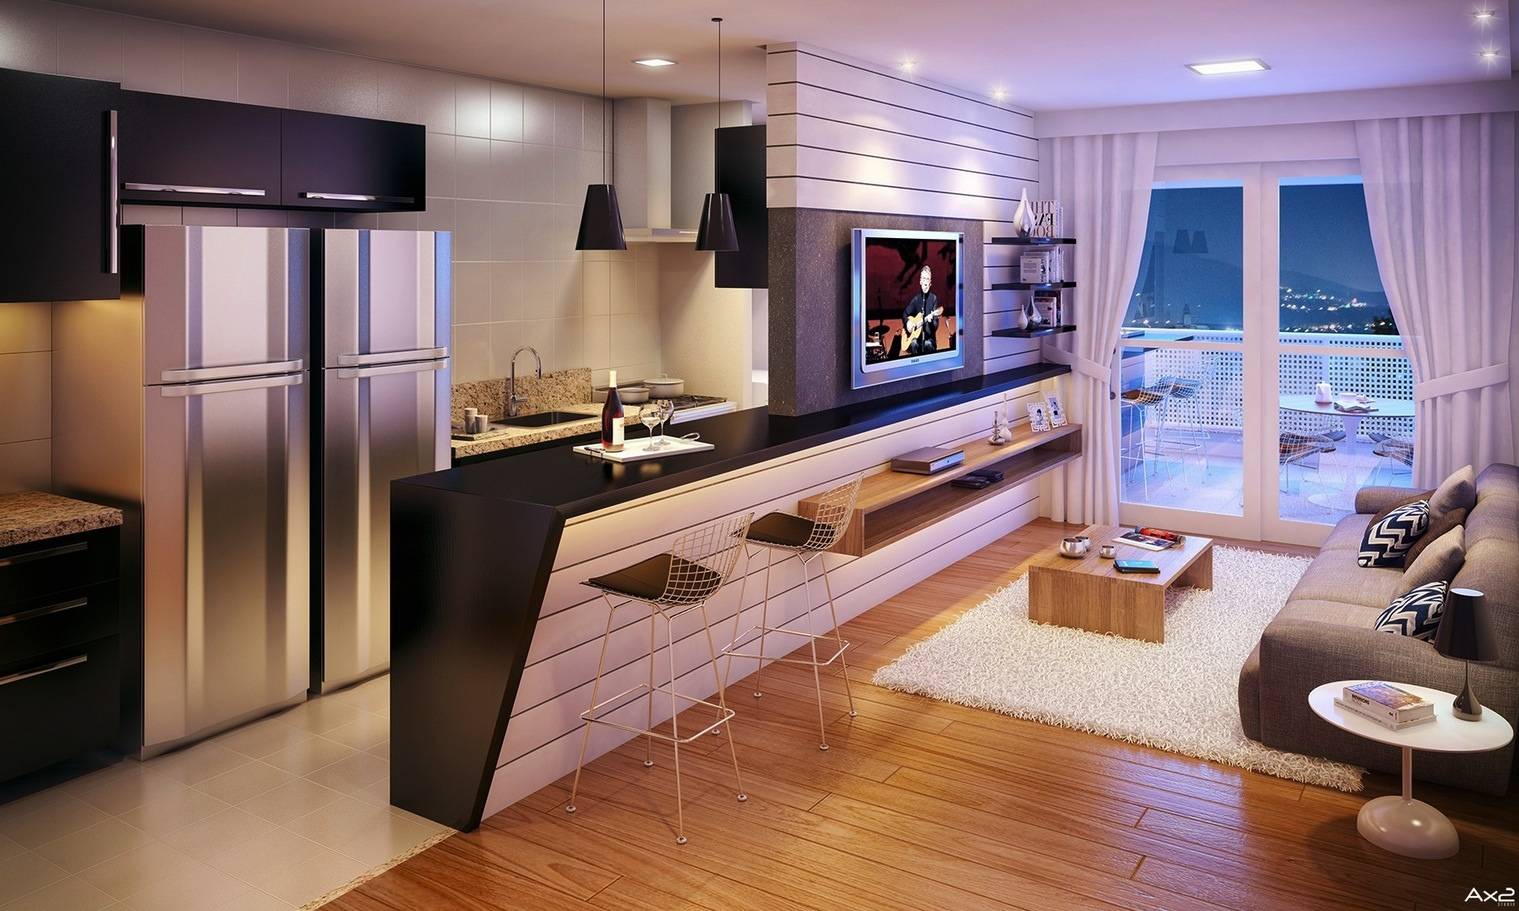 Кухня 15 м: варианты планировки, зонирование, цвета, фото в интерьере